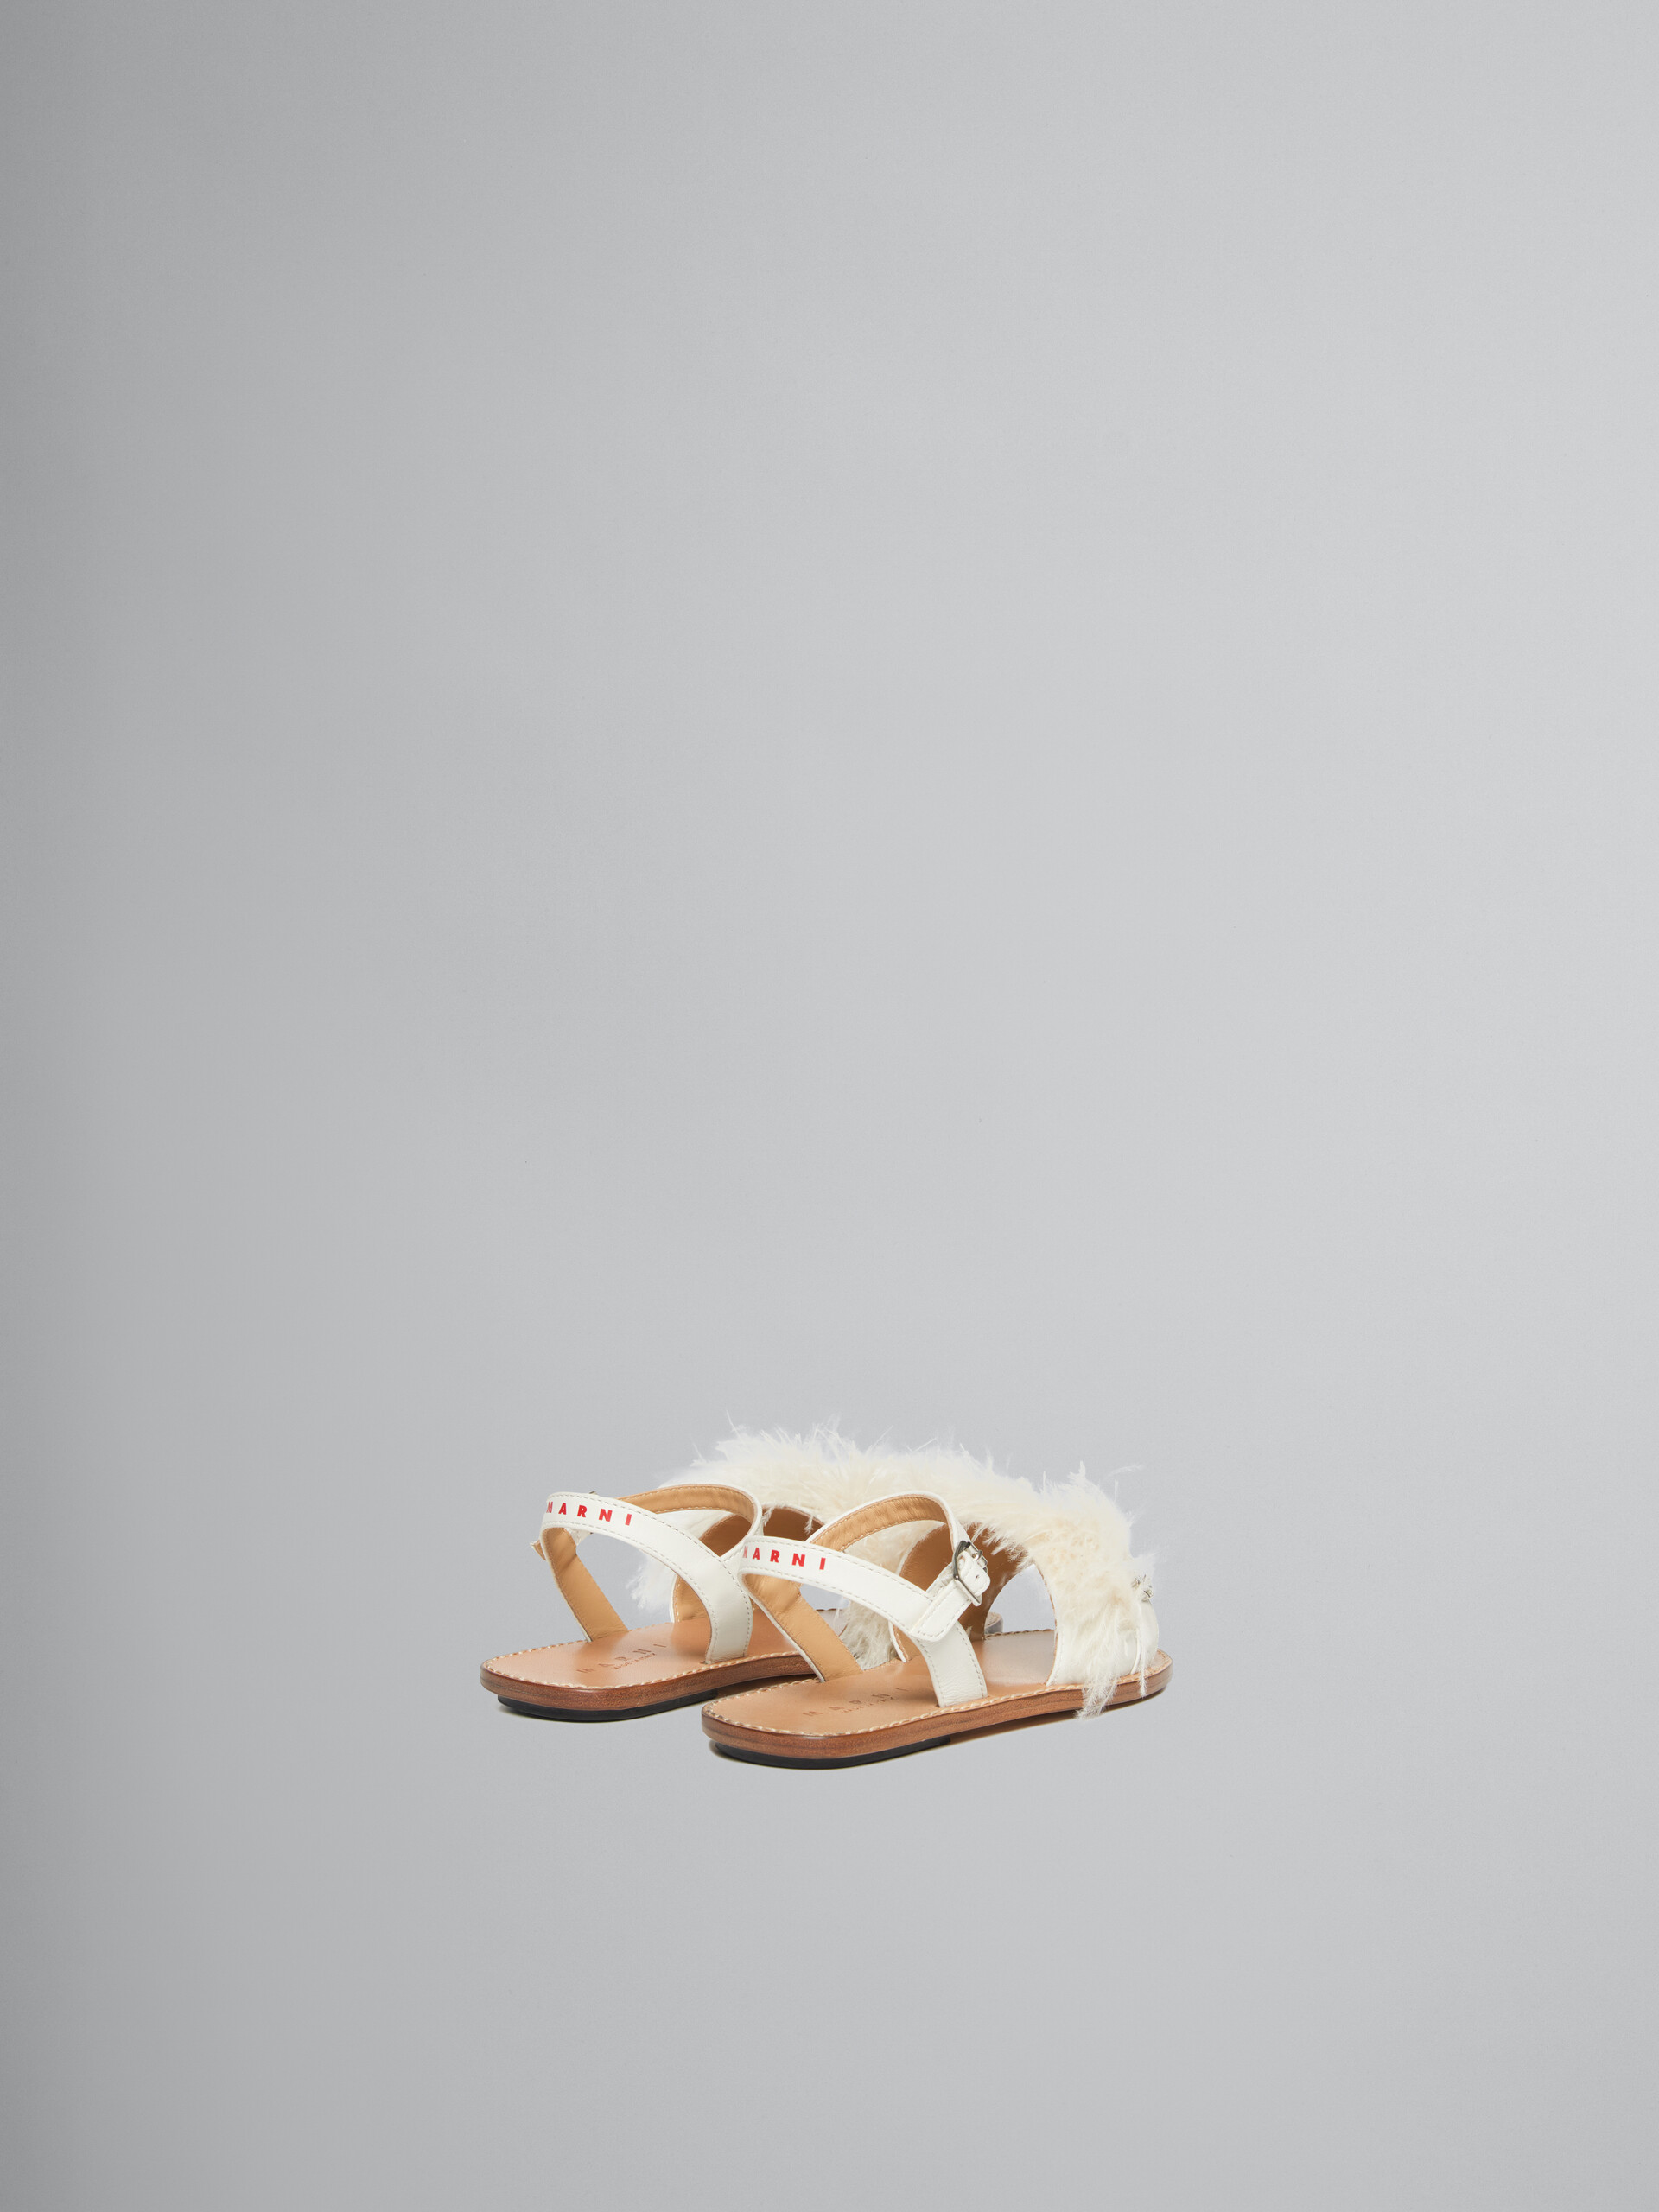 Sandales Marabou à plume blanche - ENFANT - Image 3